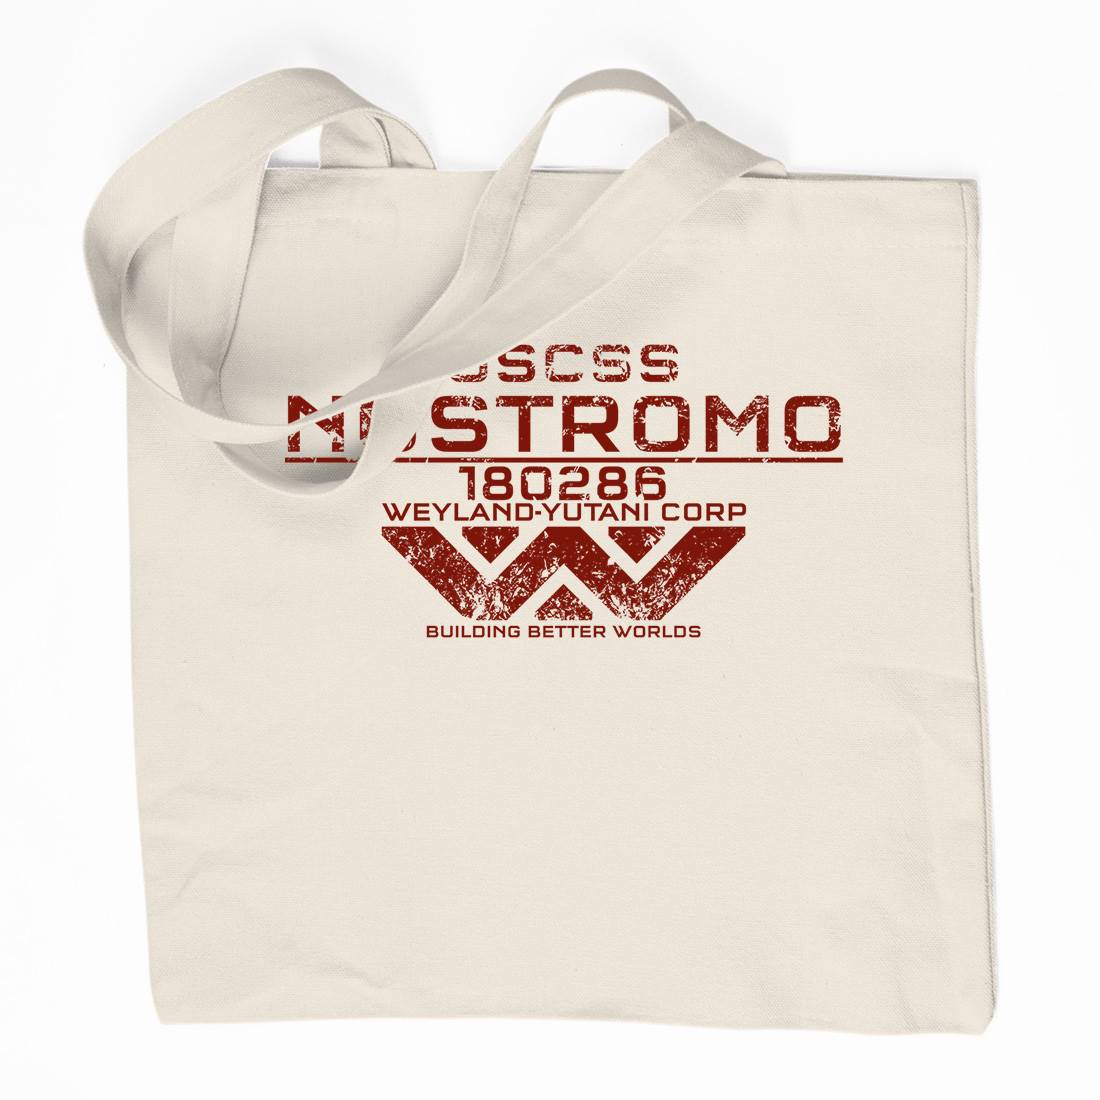 Uscss Nostromo Organic Premium Cotton Tote Bag Space D140